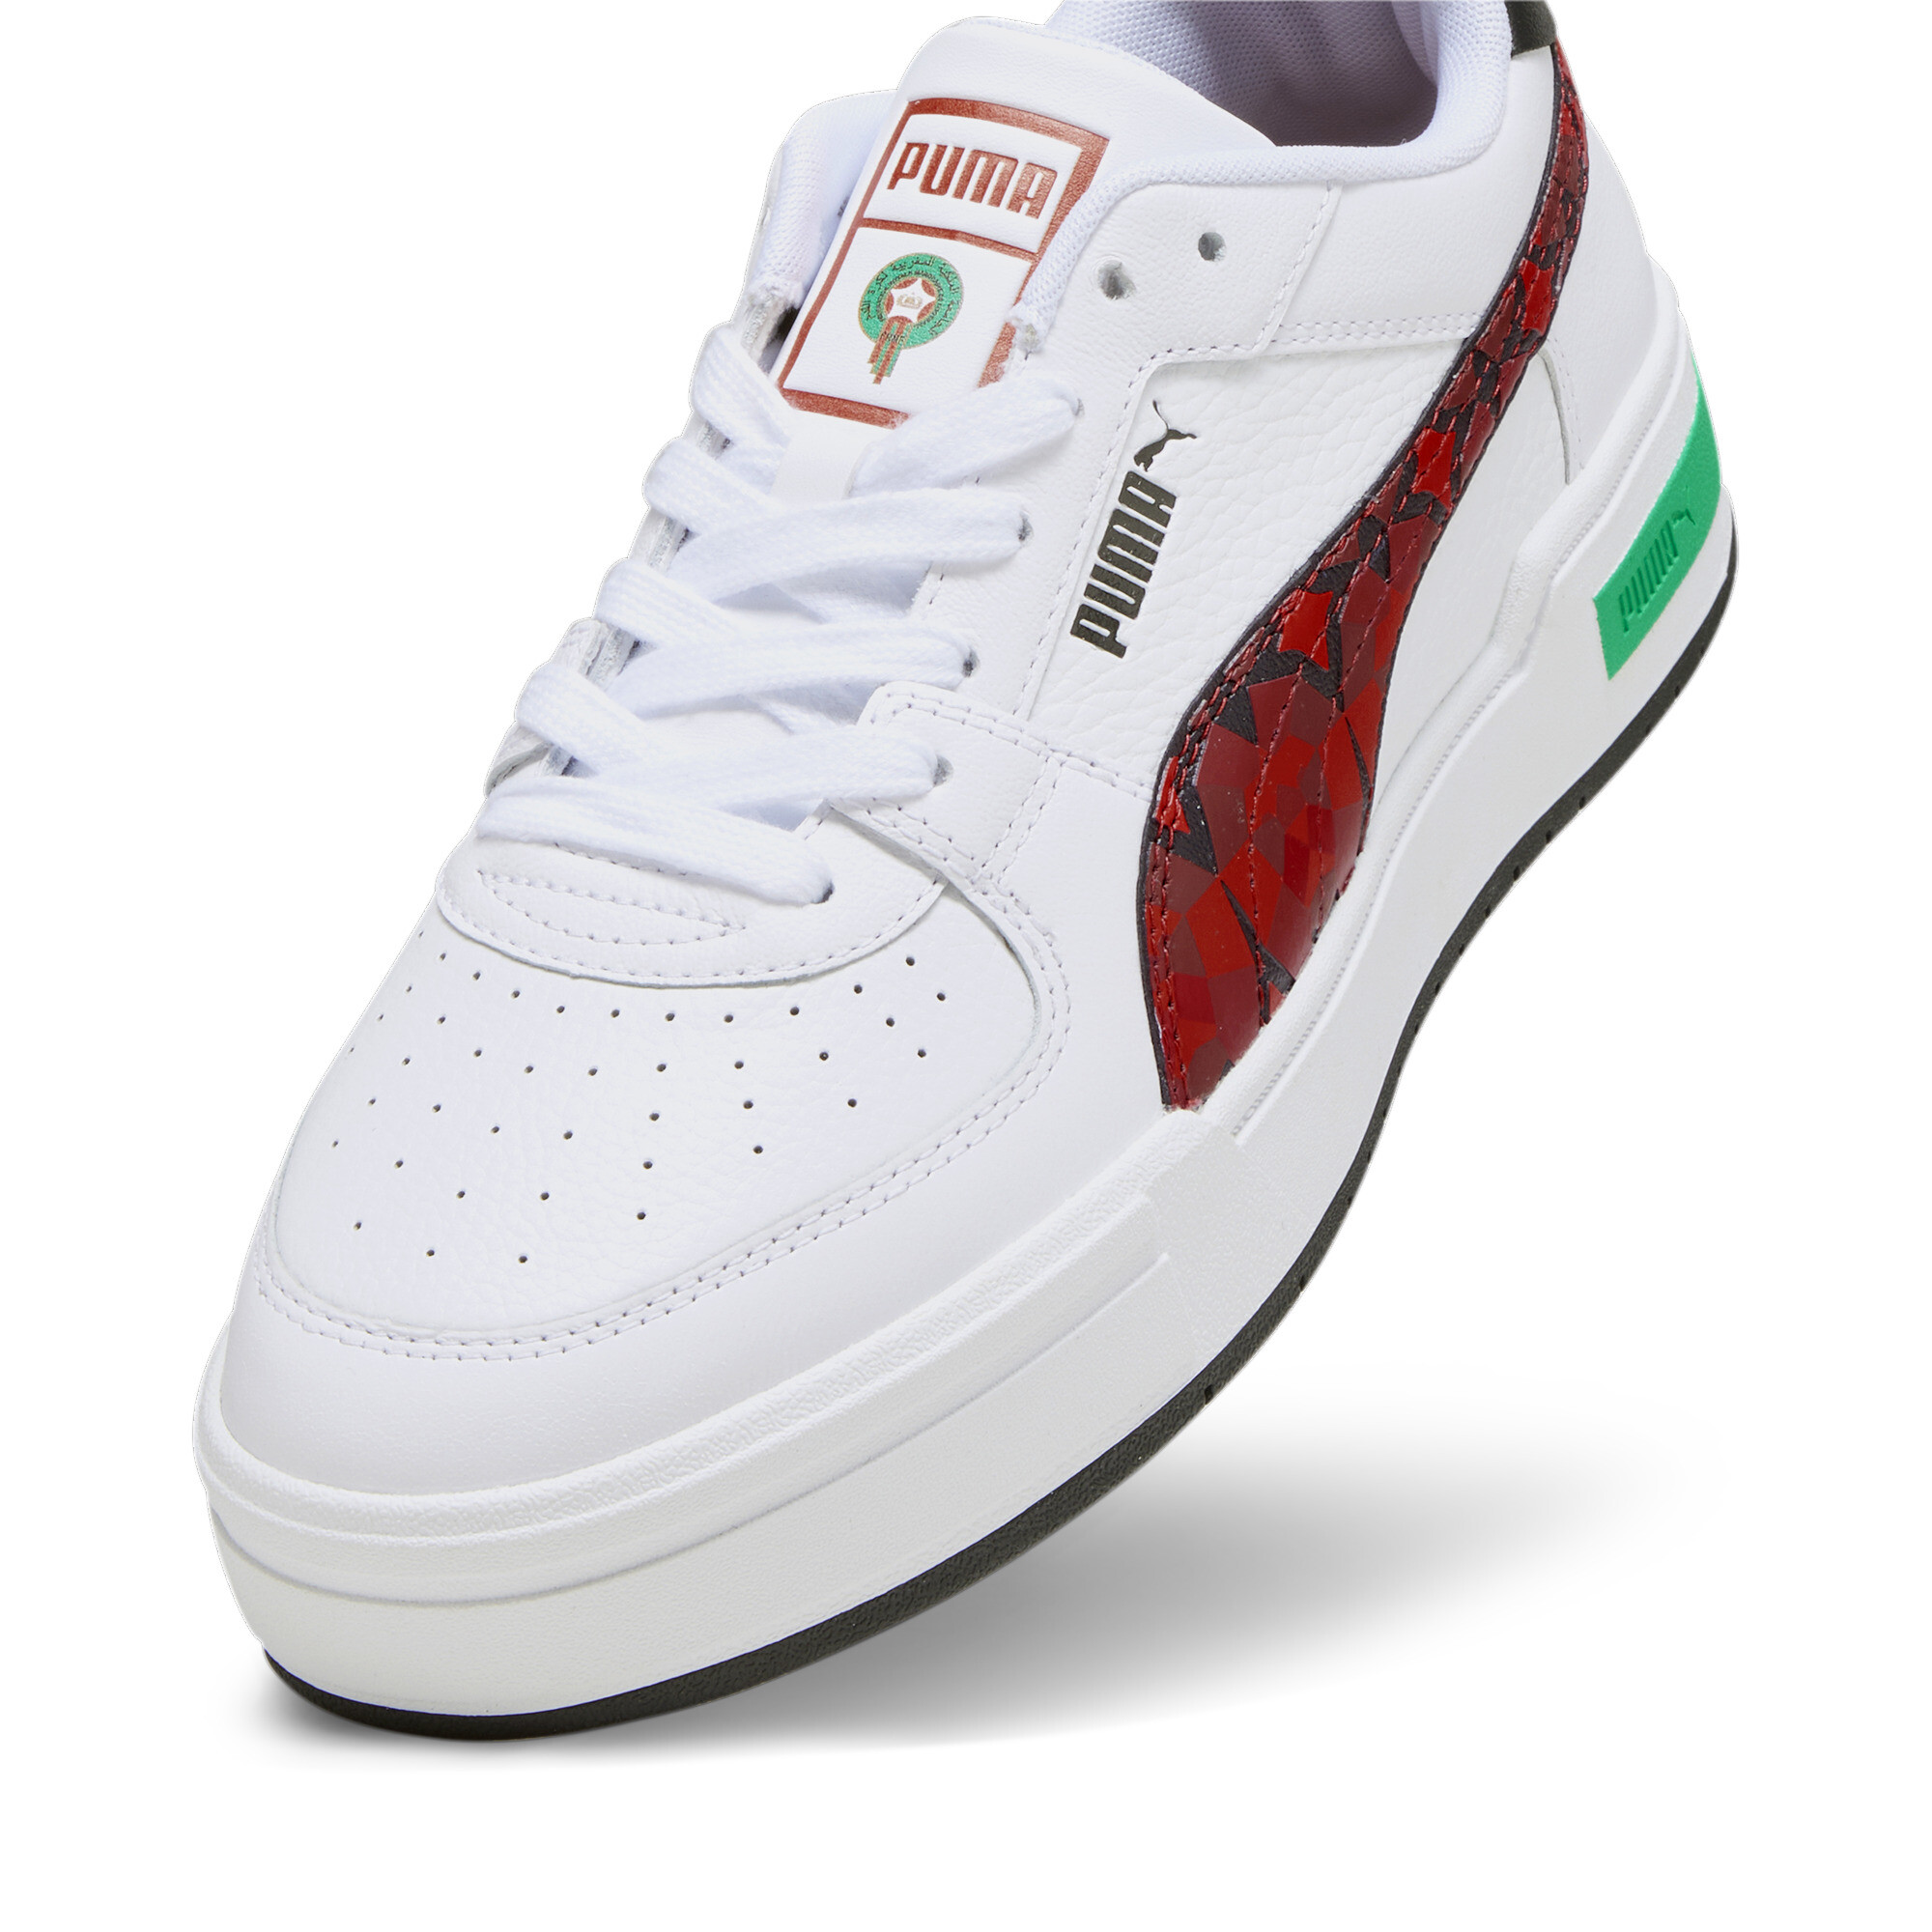 Men's PUMA CA Pro Morocco Football Sneakers In White, Size EU 39